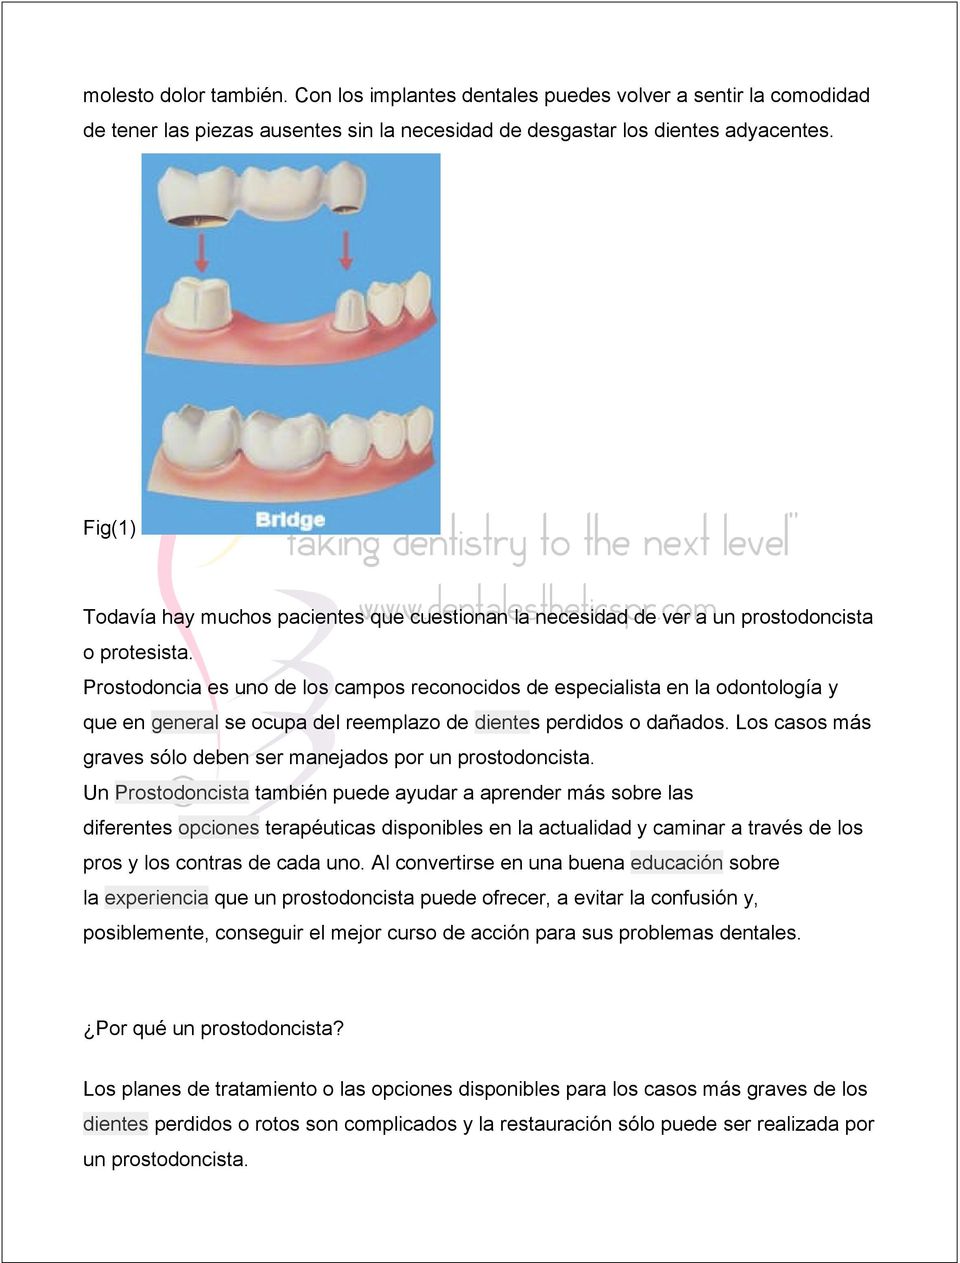 Prostodoncia es uno de los campos reconocidos de especialista en la odontología y que en general se ocupa del reemplazo de dientes perdidos o dañados.